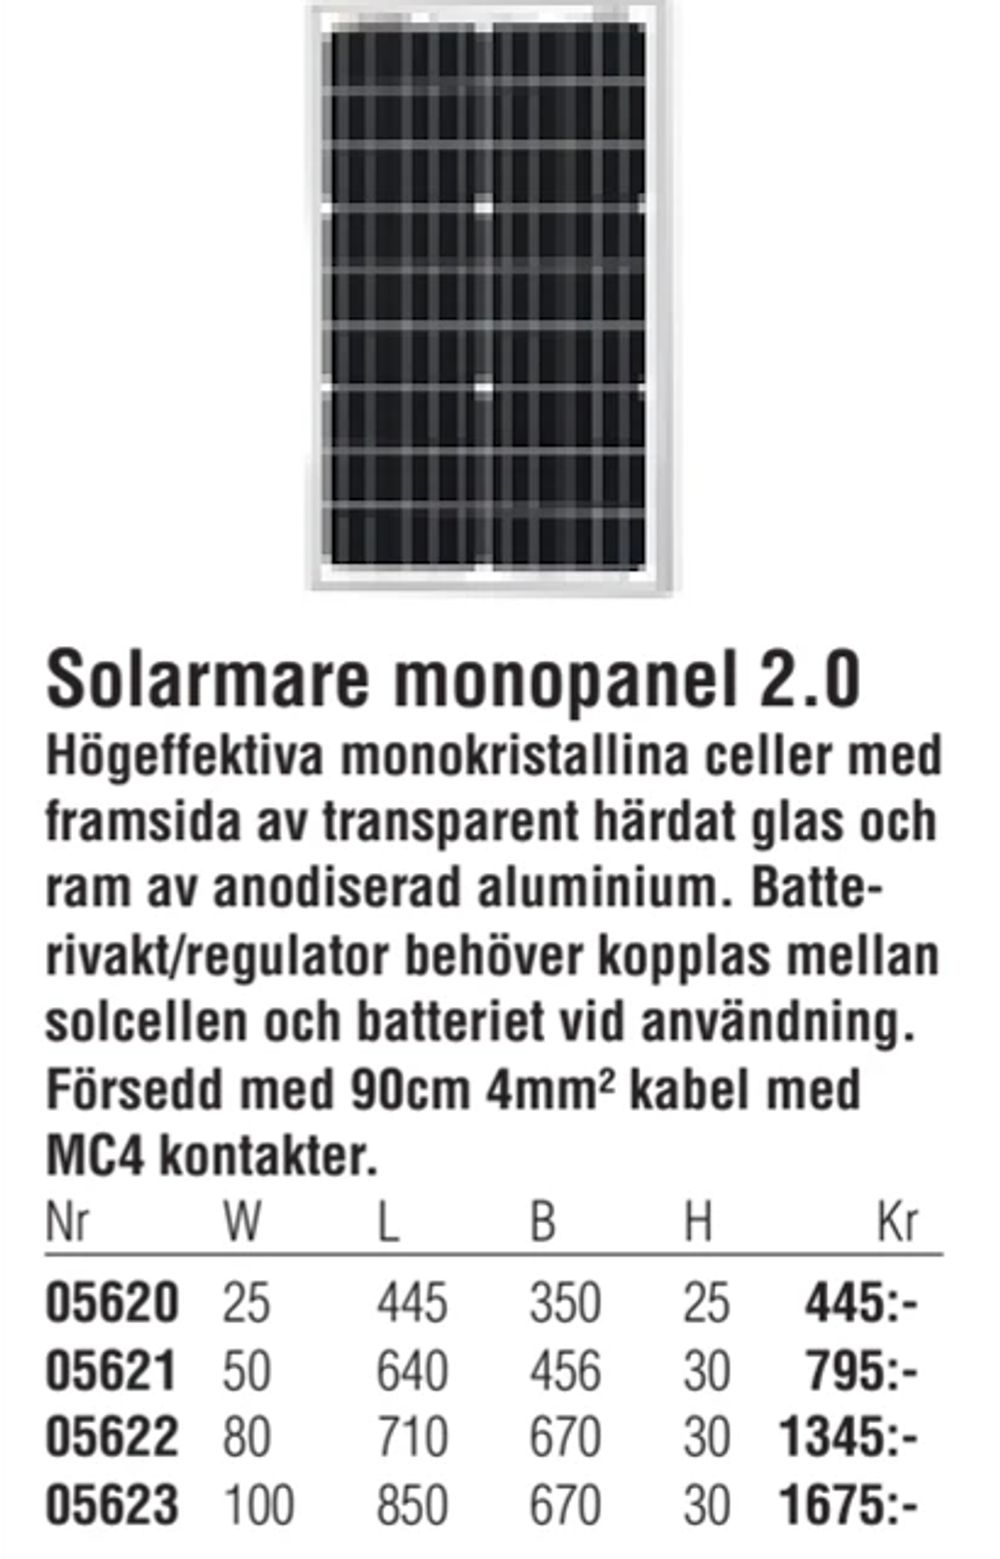 Erbjudanden på Solarmare monopanel 2.0 från Erlandsons Brygga för 445 kr